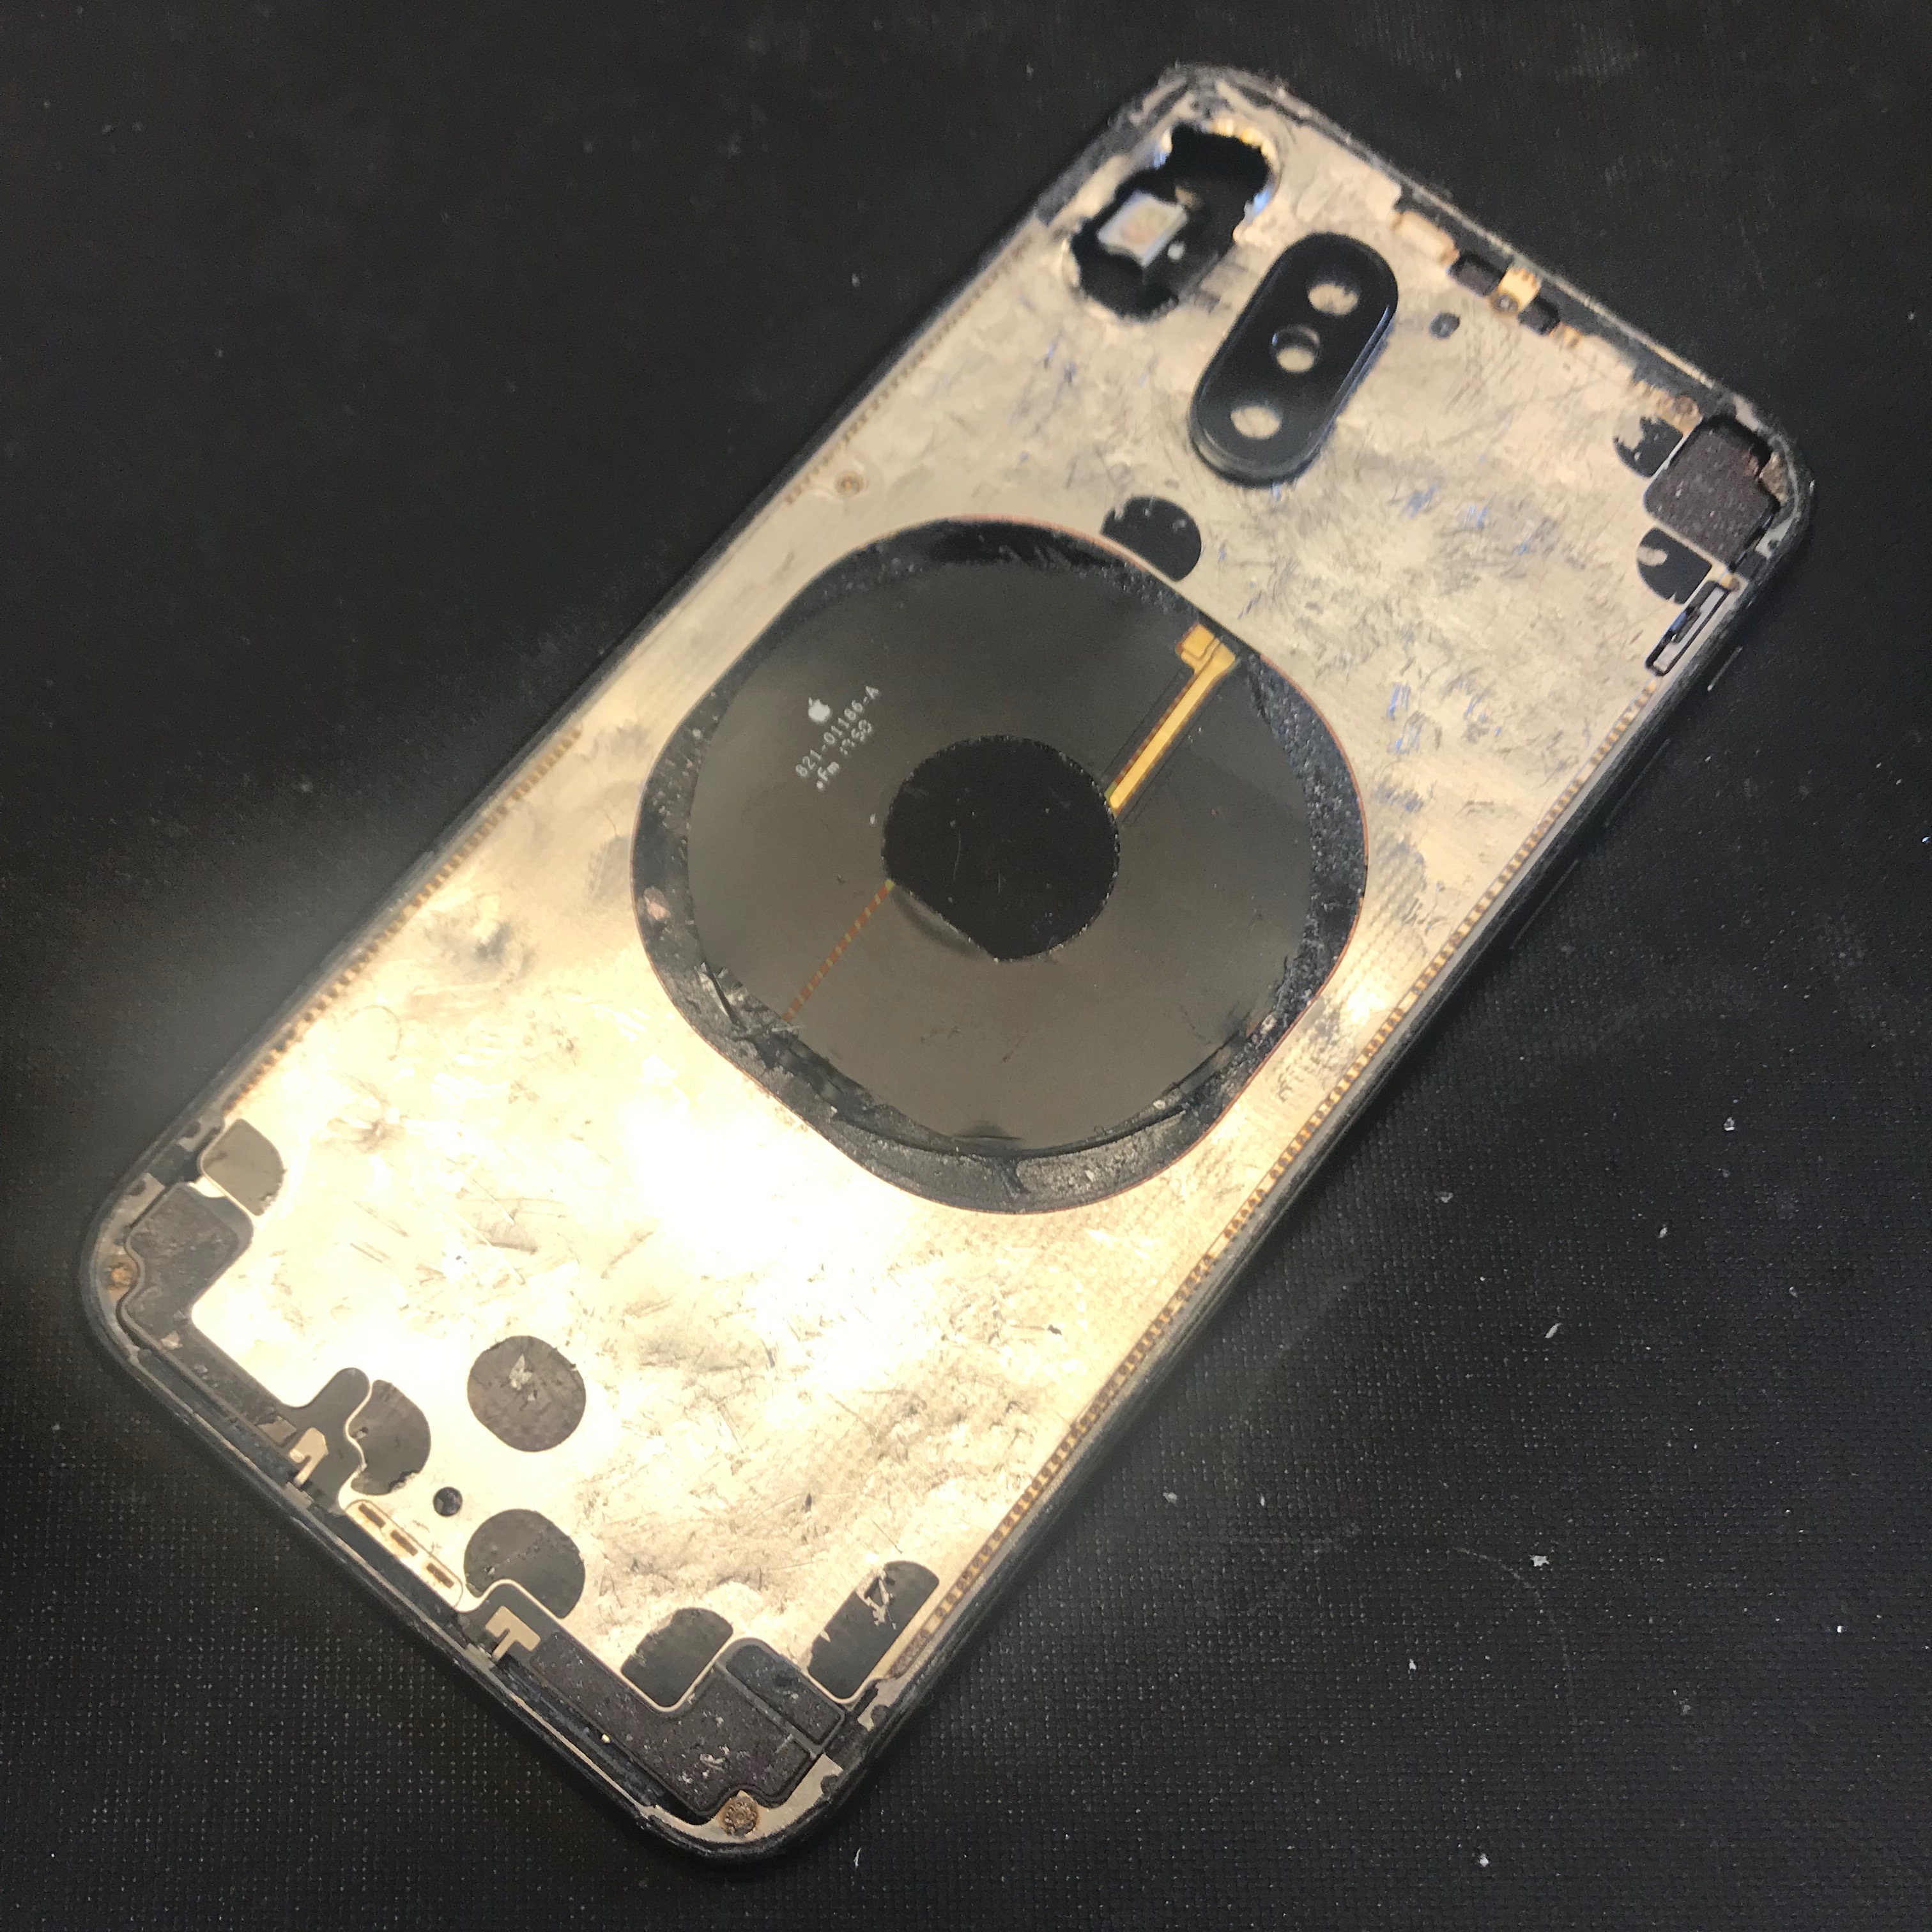 立川市からのお客様 Iphonex アイフォンx の背面ガラス交換修理 機種 Iphone X 修理事例のご紹介